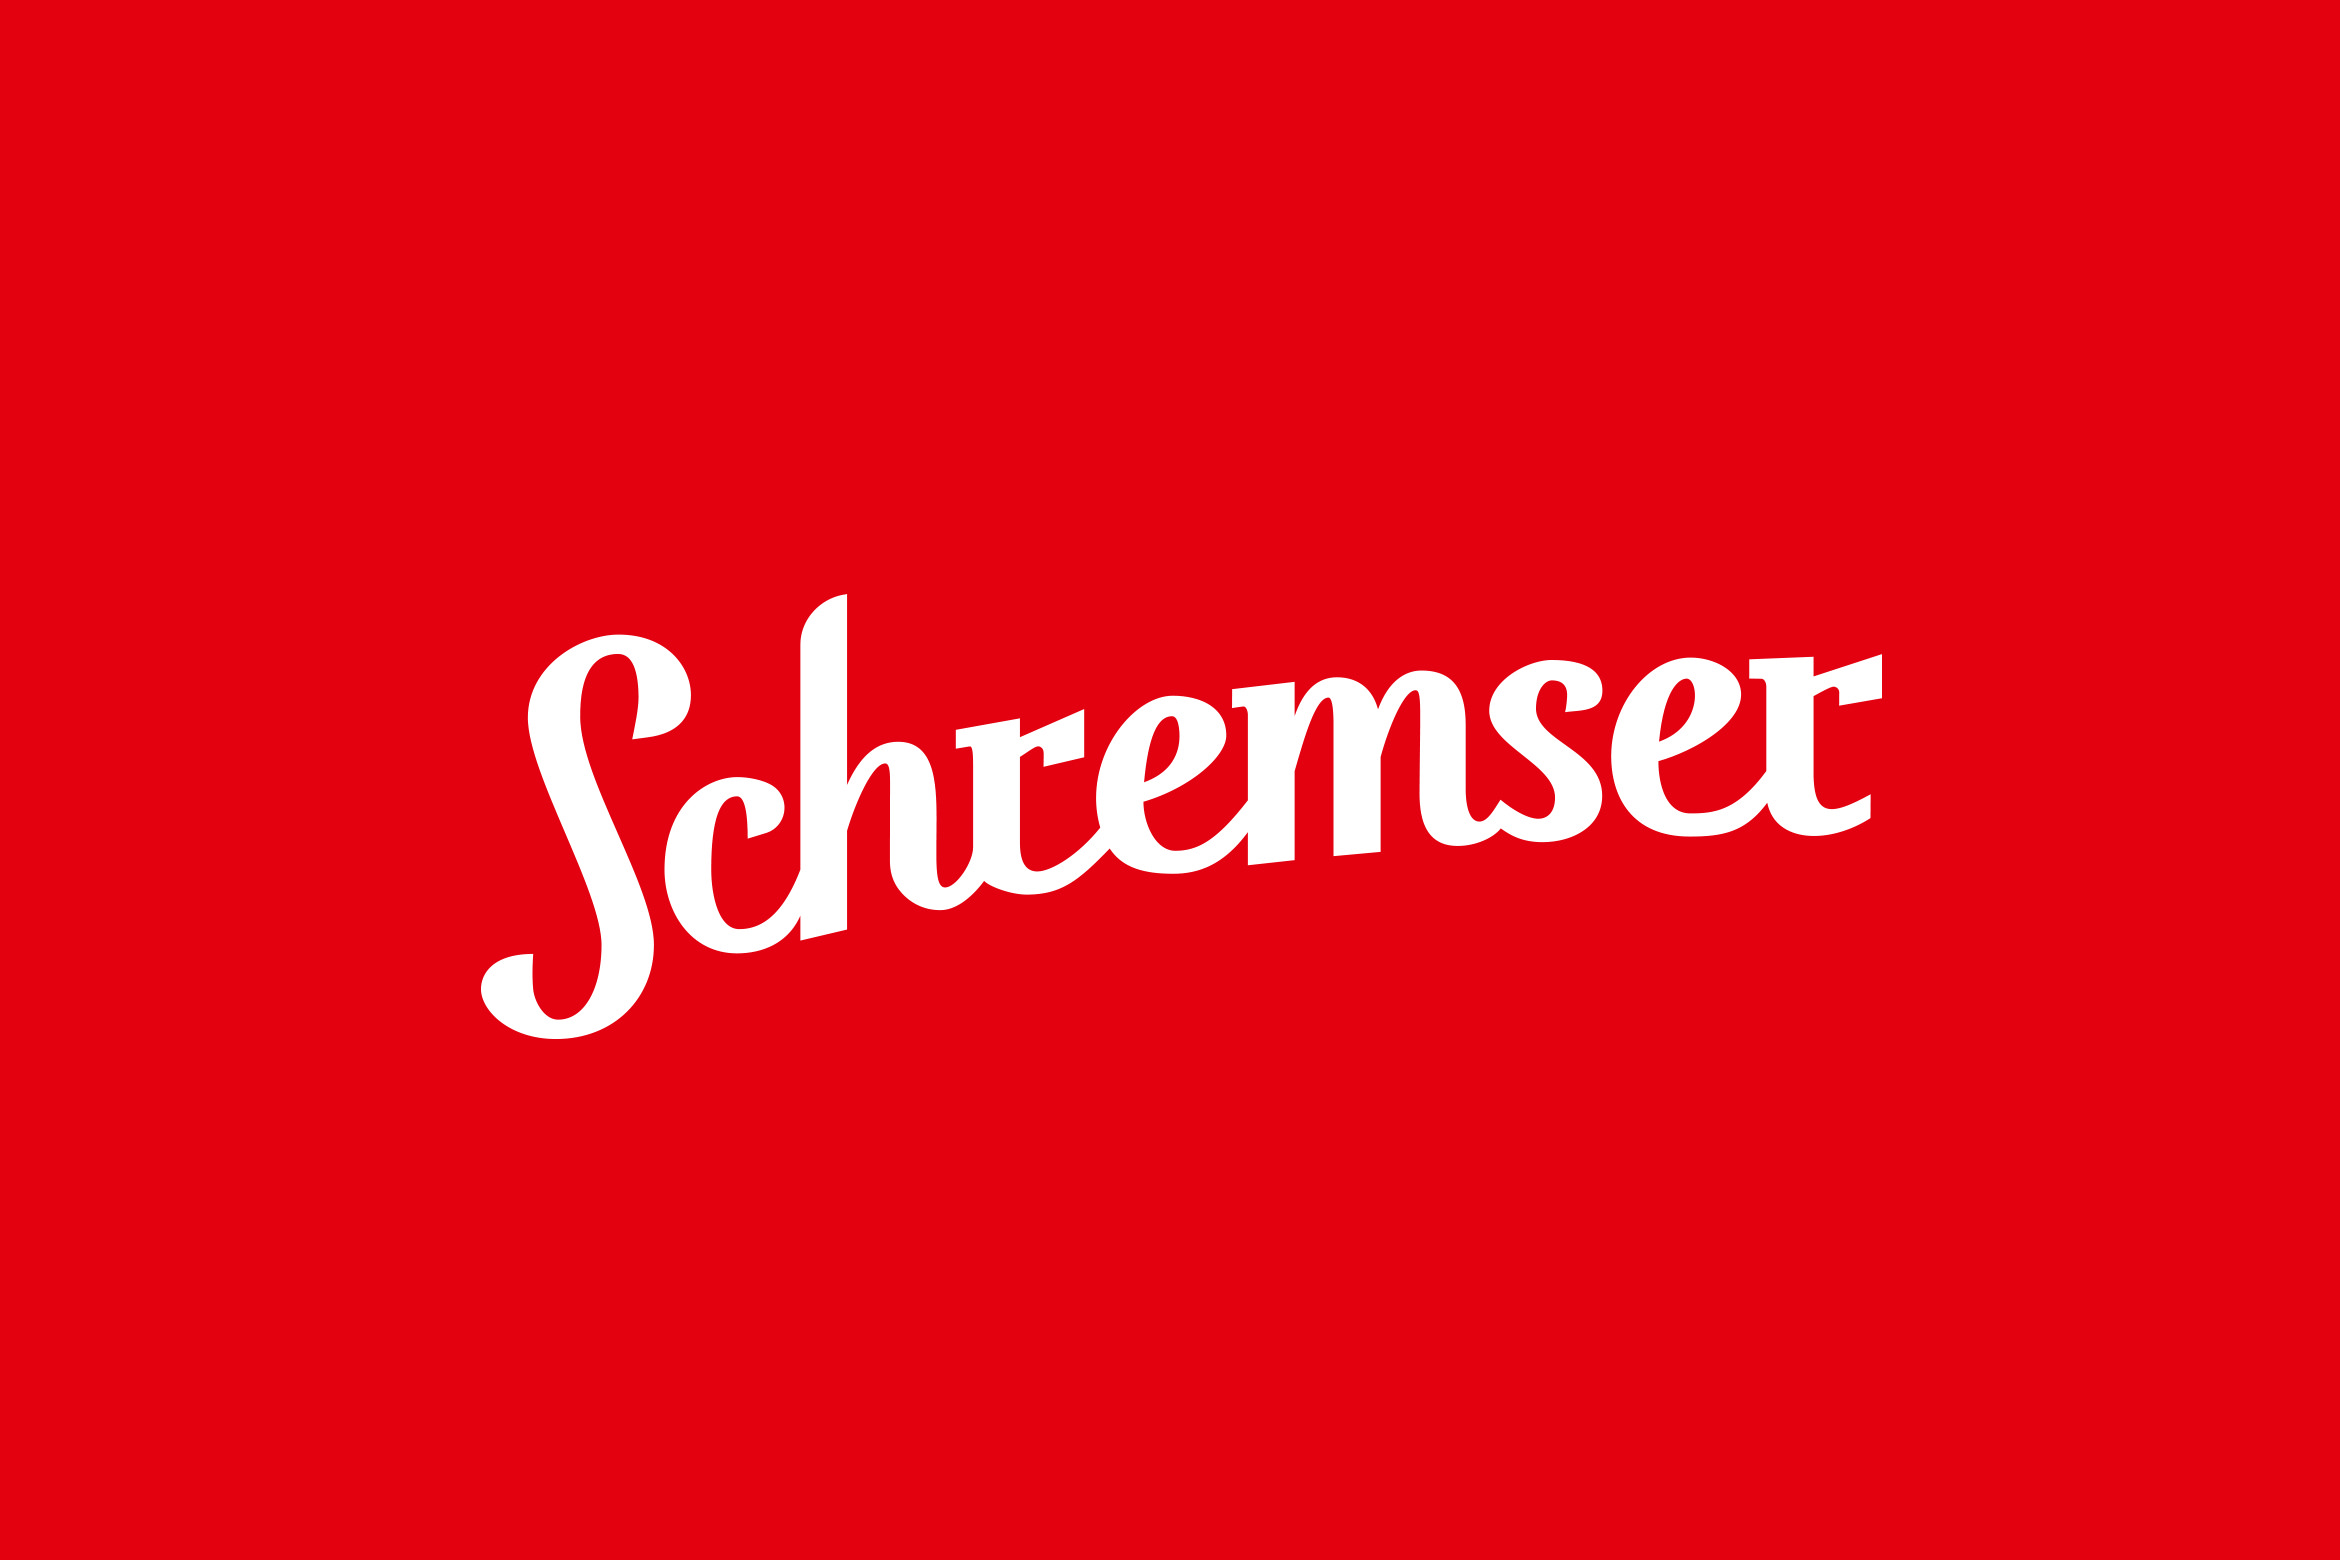 schremserbier_logo_branding